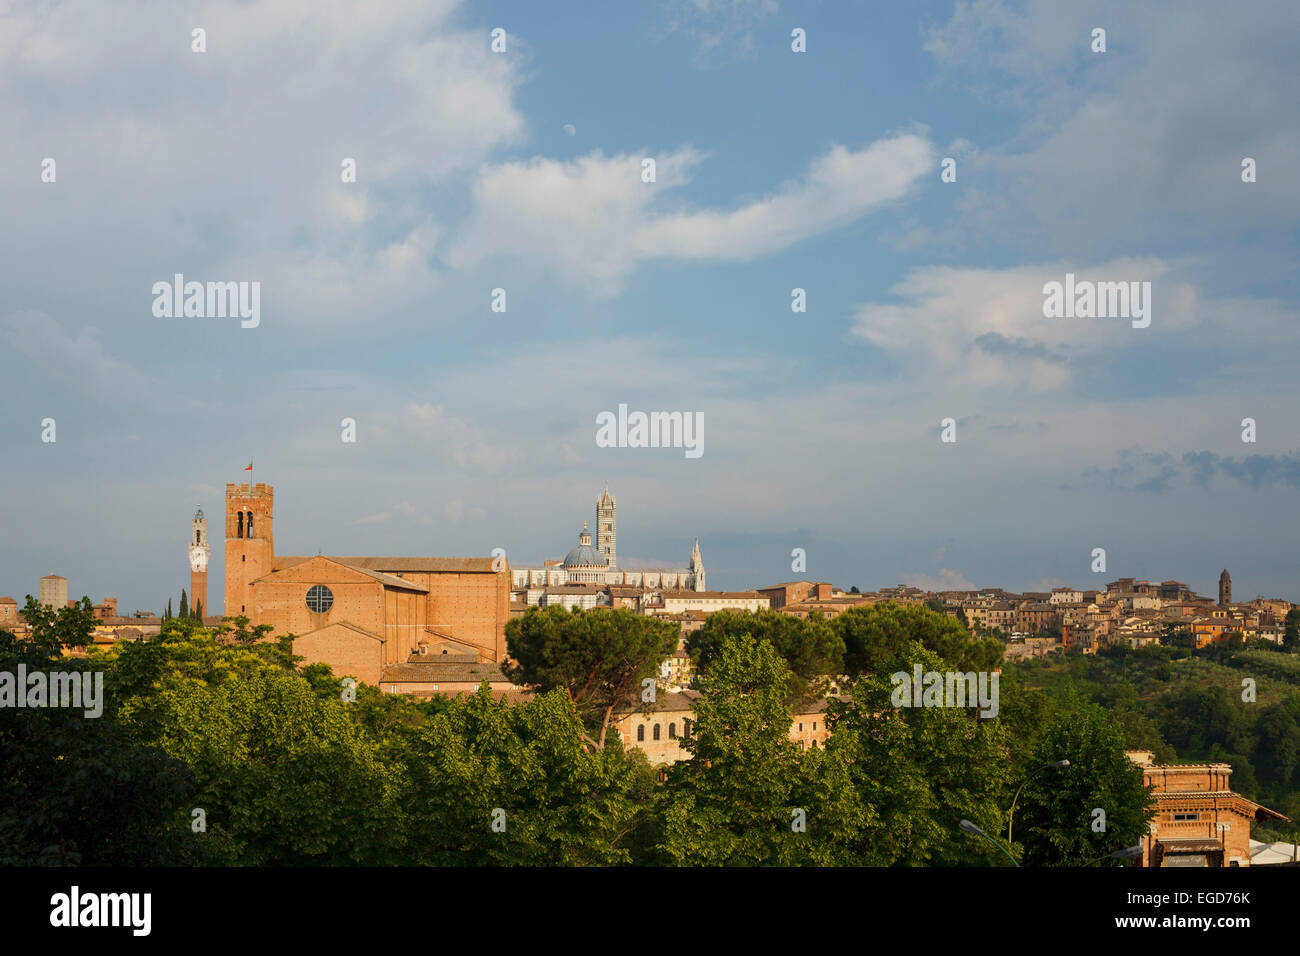 Vue urbaine avec basilique San Domenico, Torre del Mangia Bell Tower et cathédrale Santa Maria, la cathédrale de Sienne, UNESCO World Heritage Site, Toscane, Italie, Europe Banque D'Images